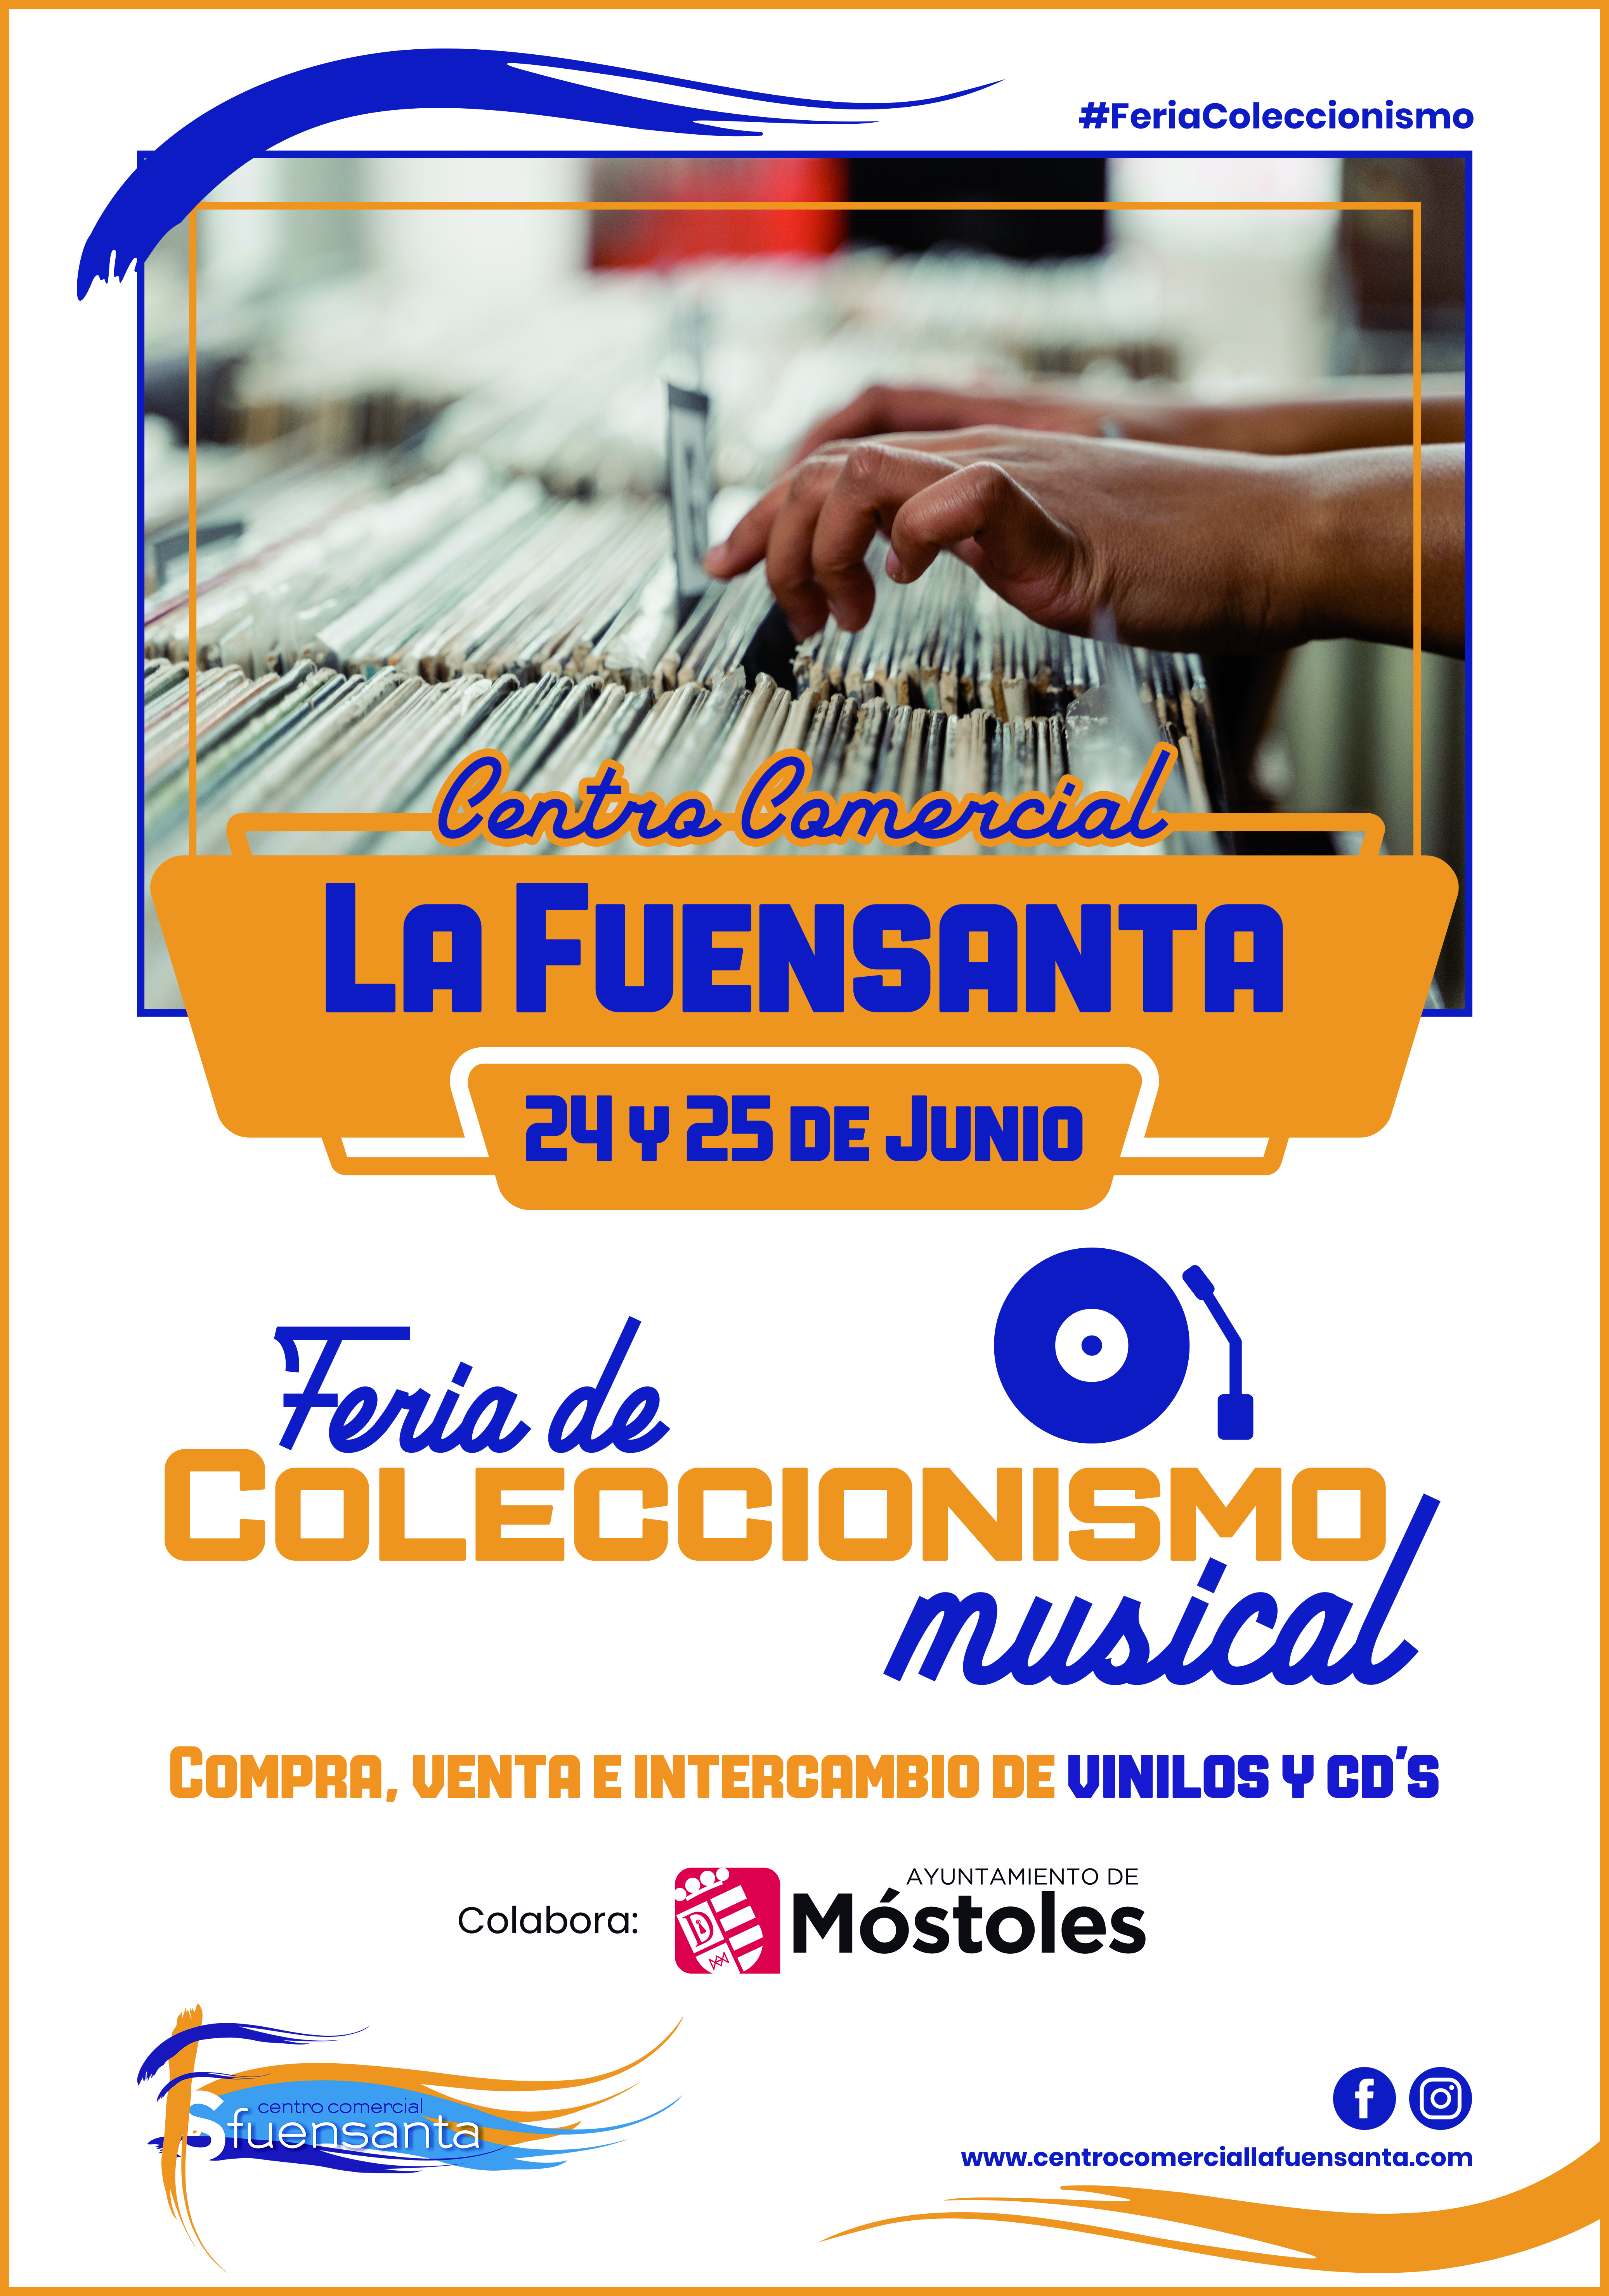 Feria de Coleccionismo Musical en Centro Comercial La Fuensanta en Móstoles